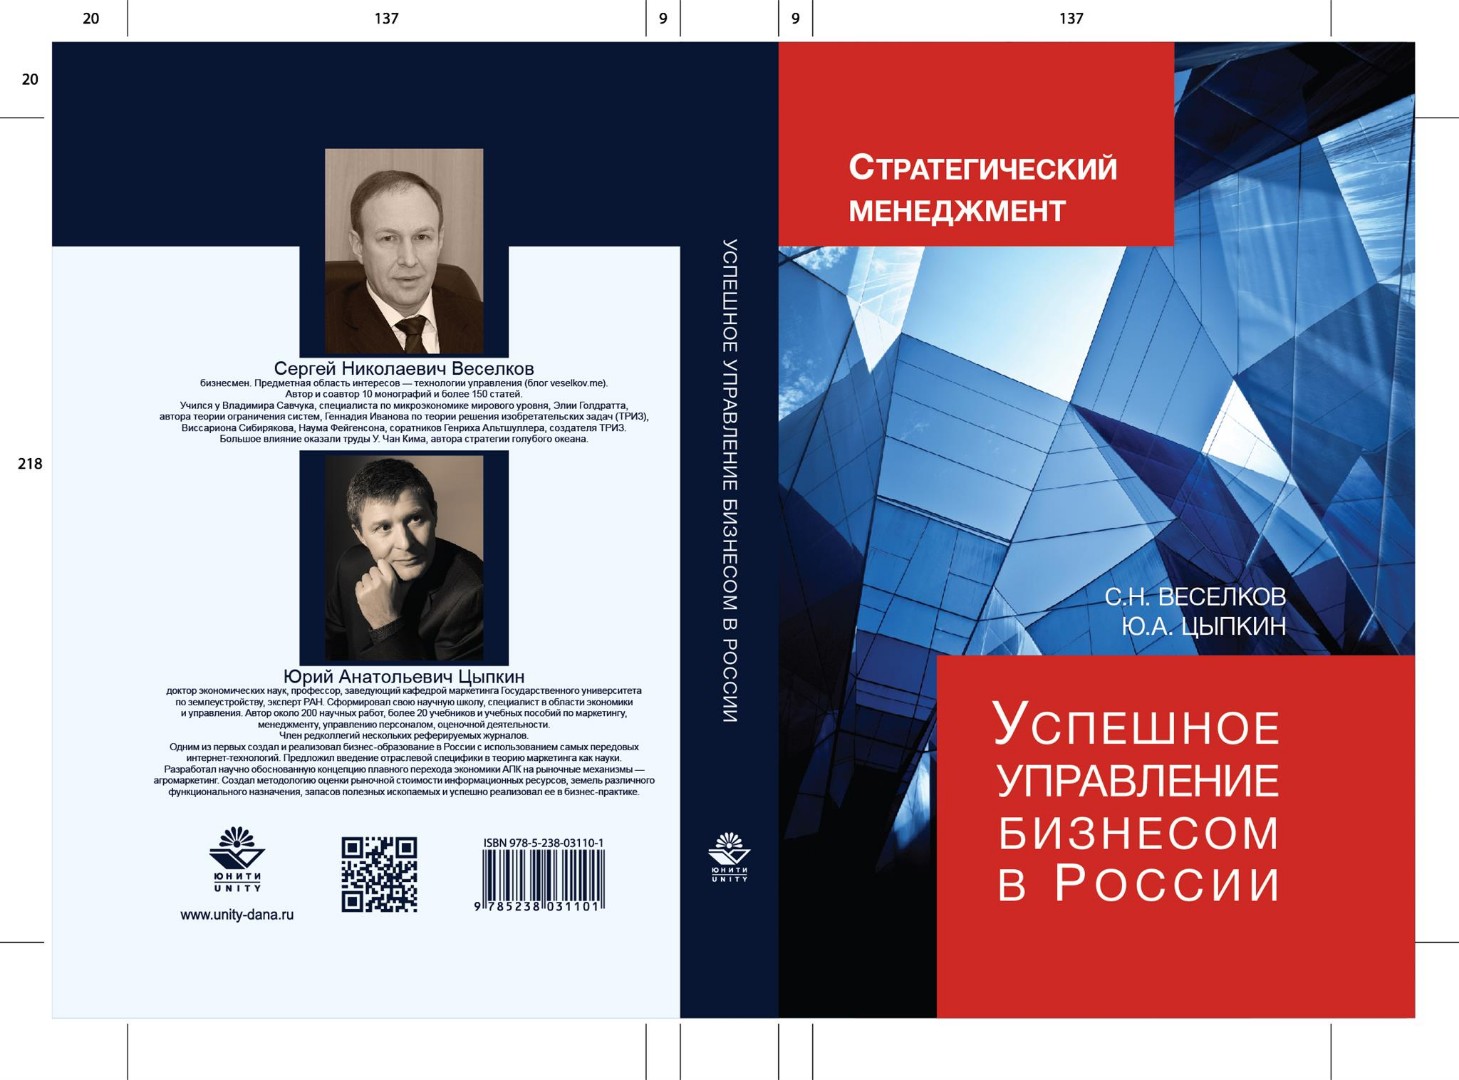 Успешное управление бизнесом в России:Стратегический менеджмент